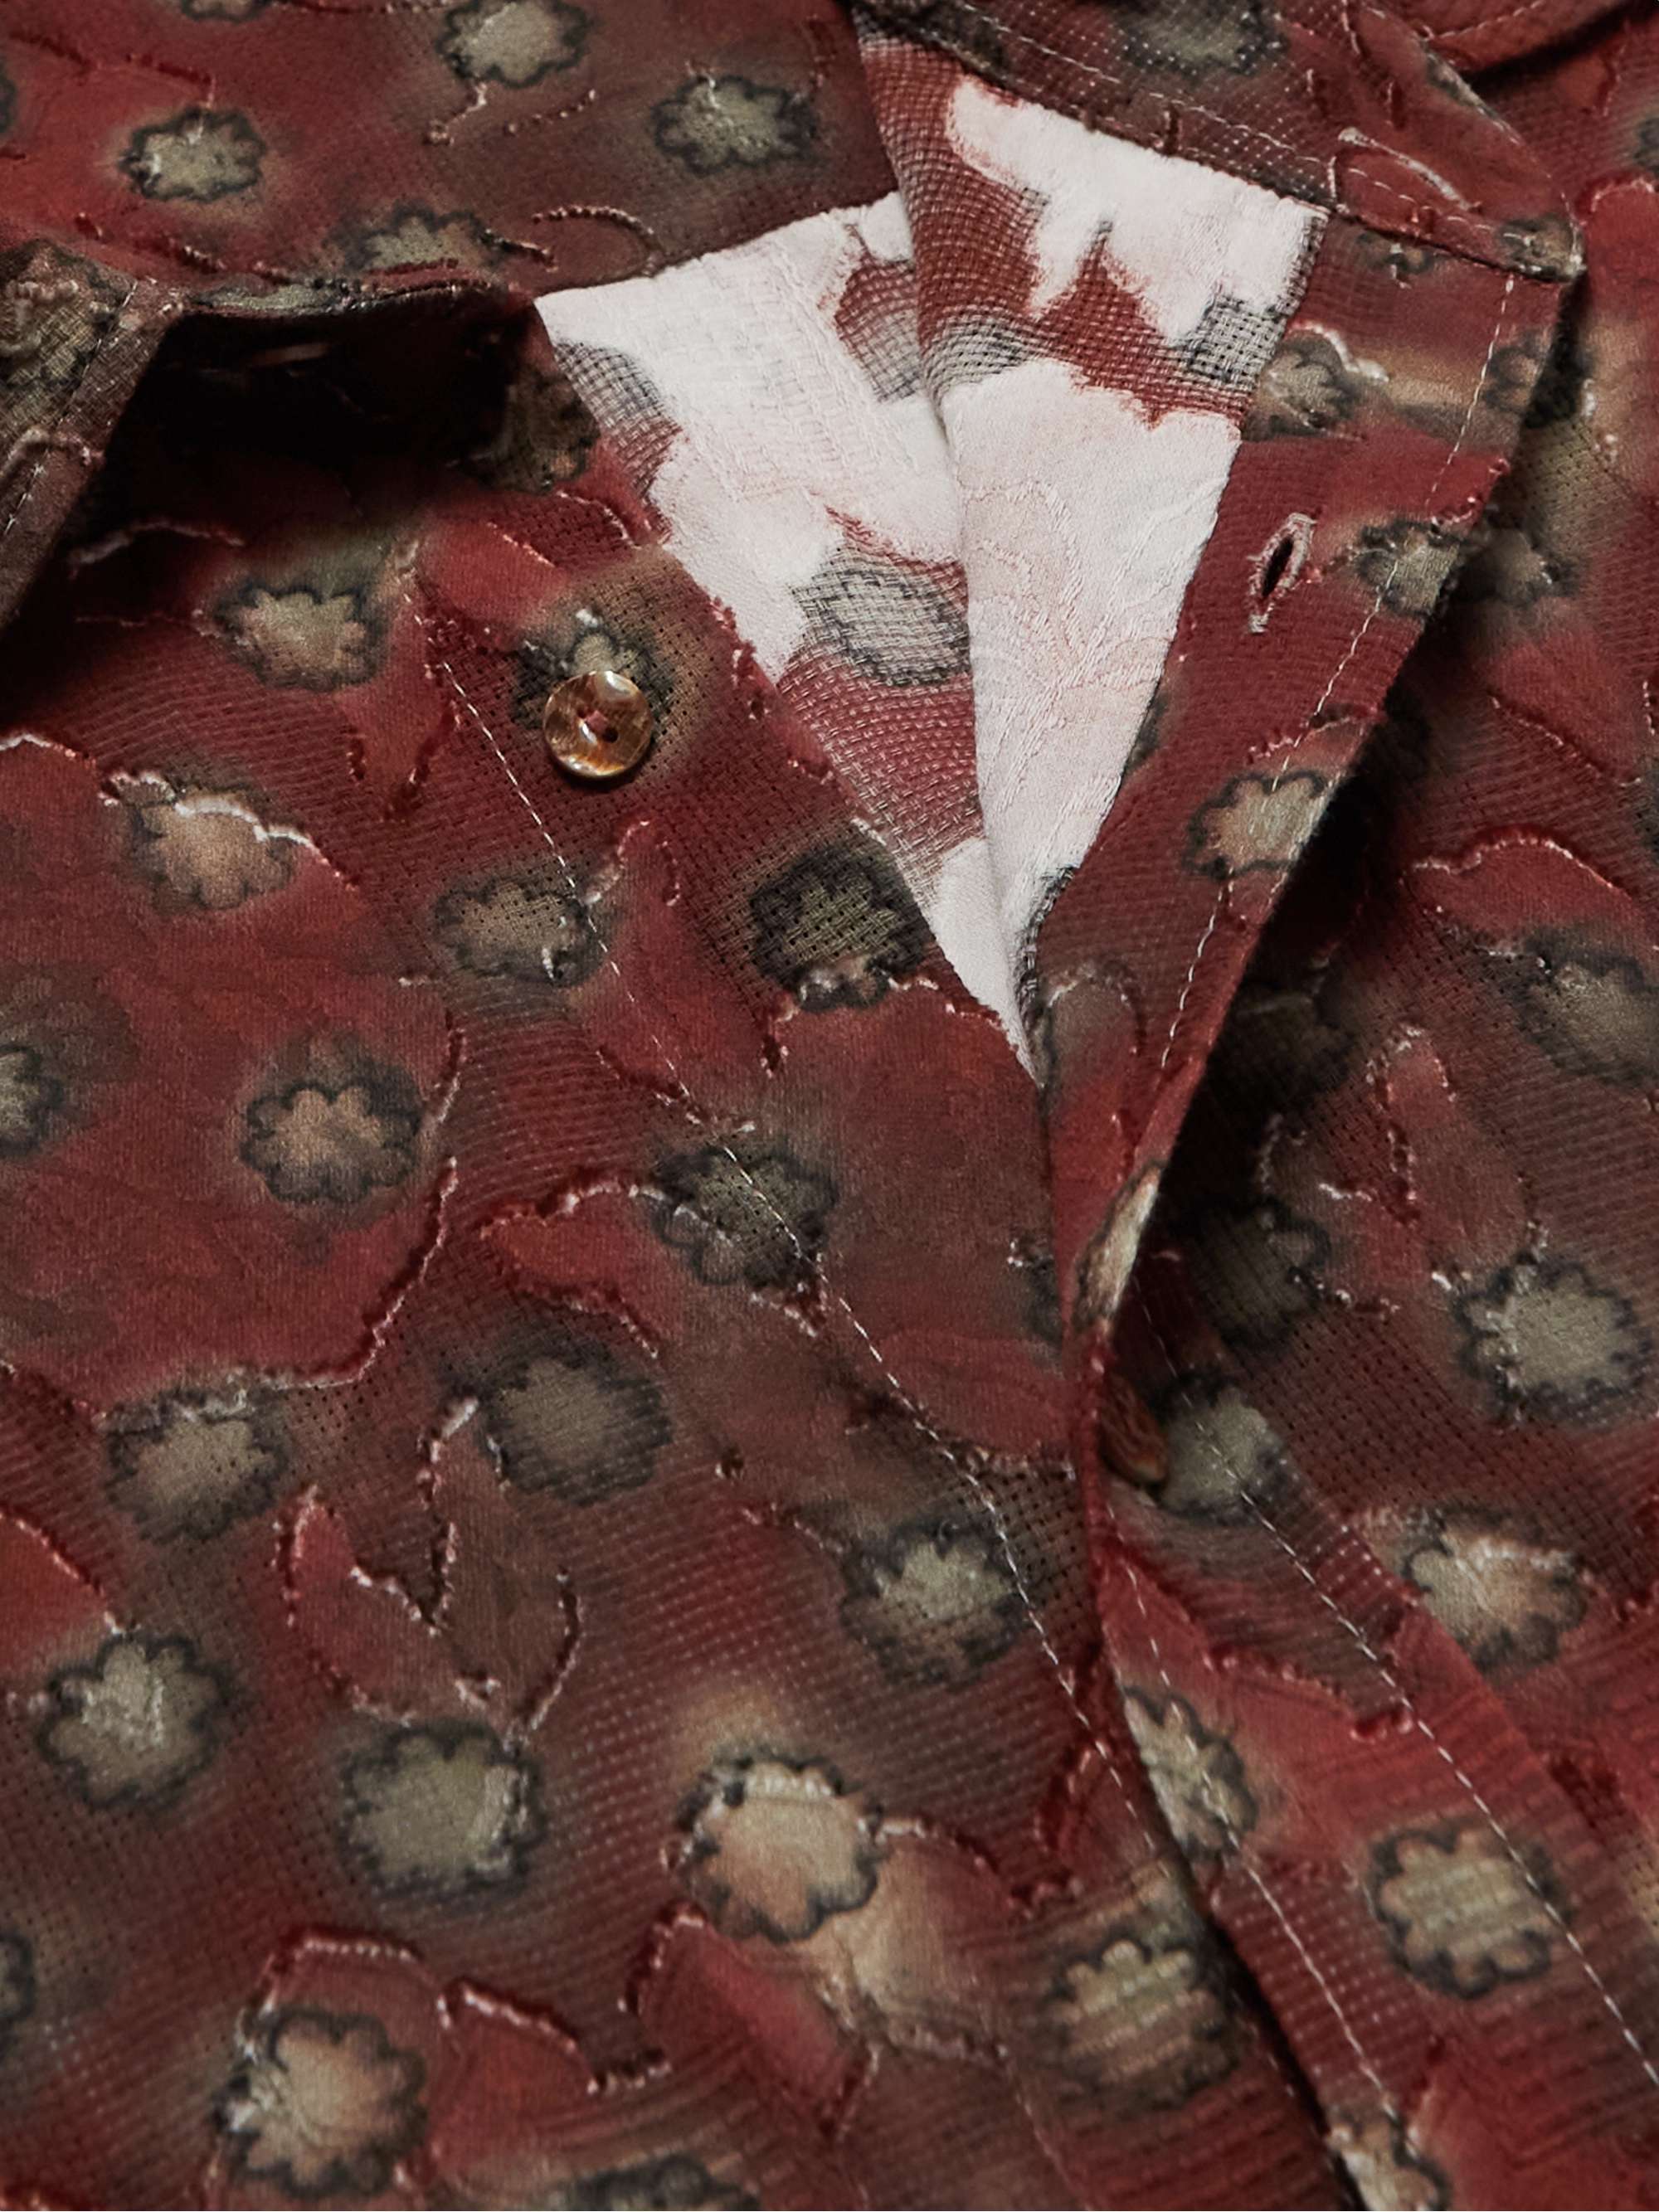 ACNE STUDIOS Sambler Floral-Print Cotton Fil Coupé Shirt